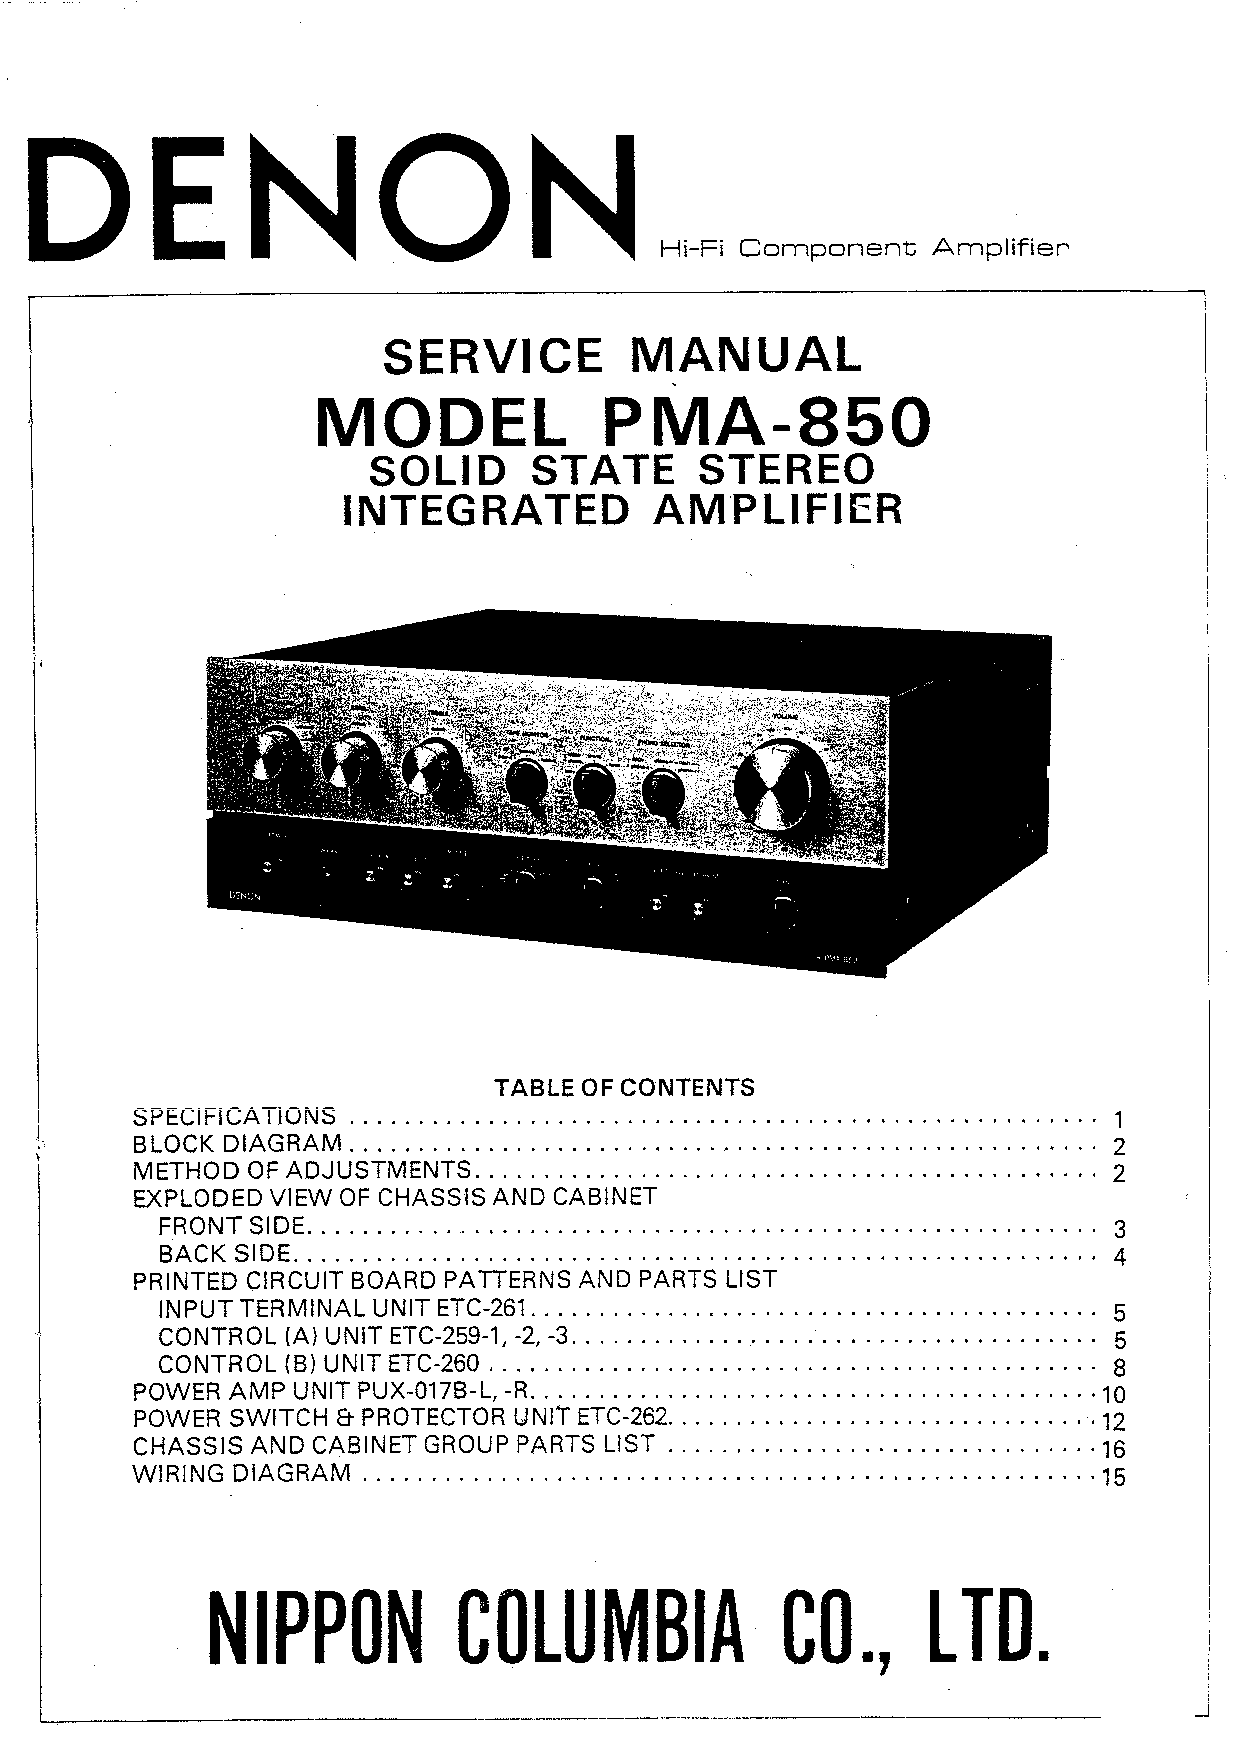 Denon PMA-850 Service Manual